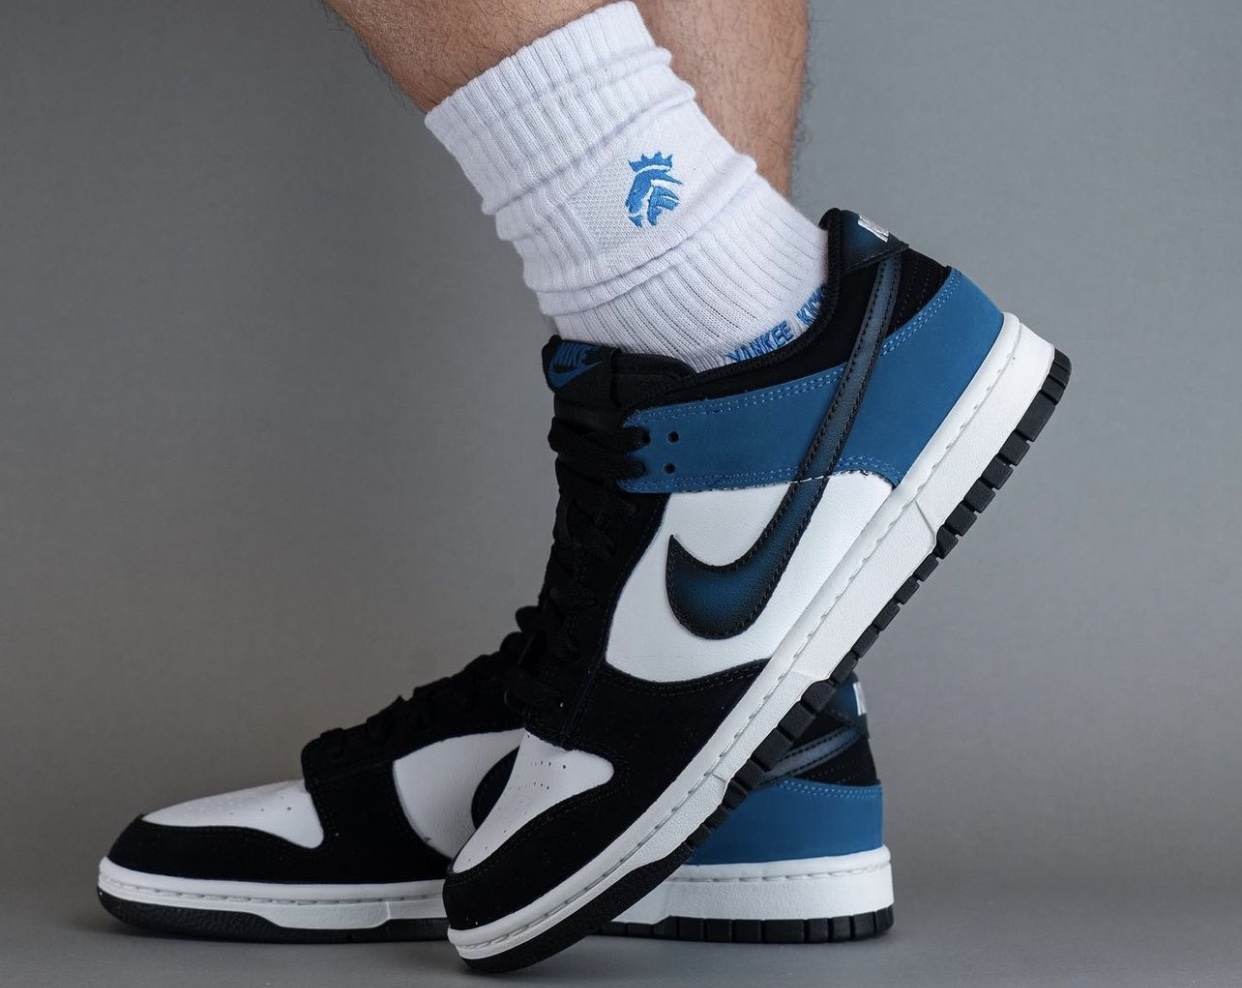 Nike Dunk Low Industrial Blue FD6923 100 On Feet 5